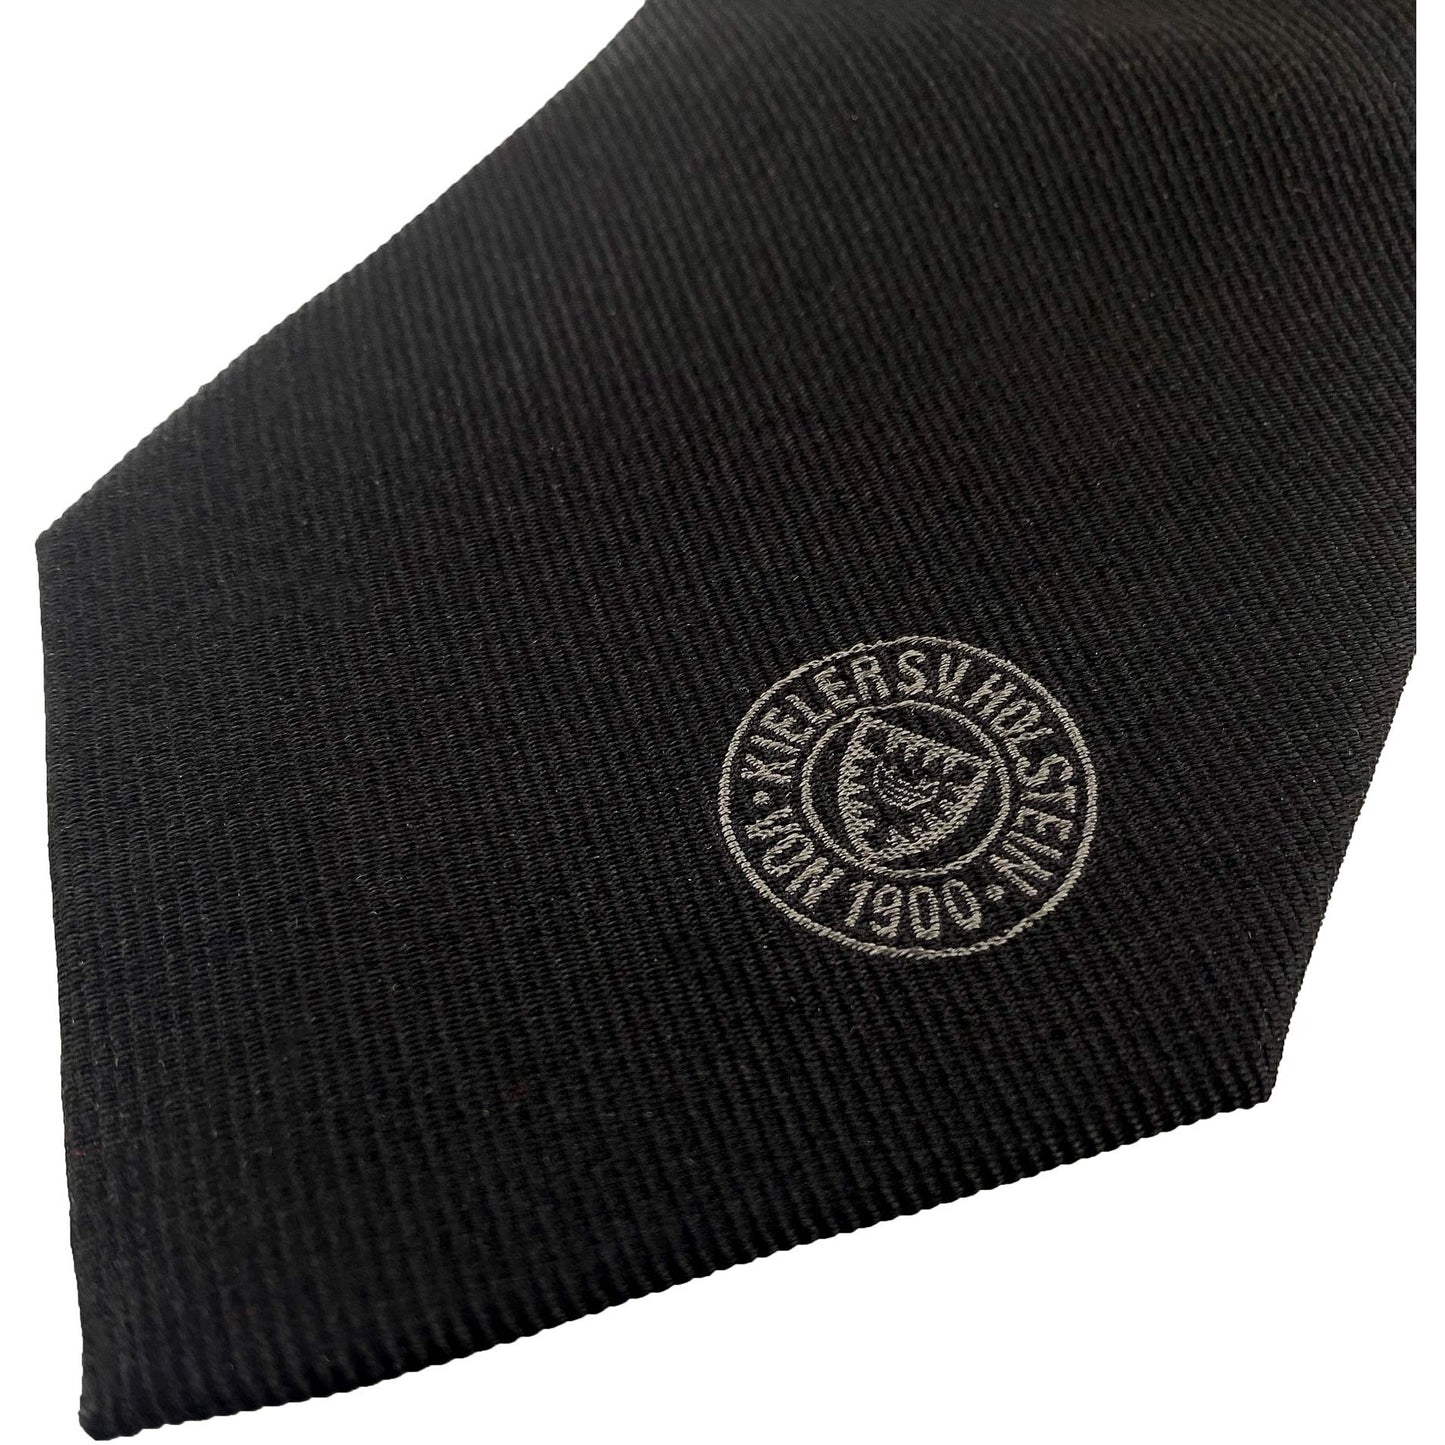 Holstein Kiel Krawatte schwarz